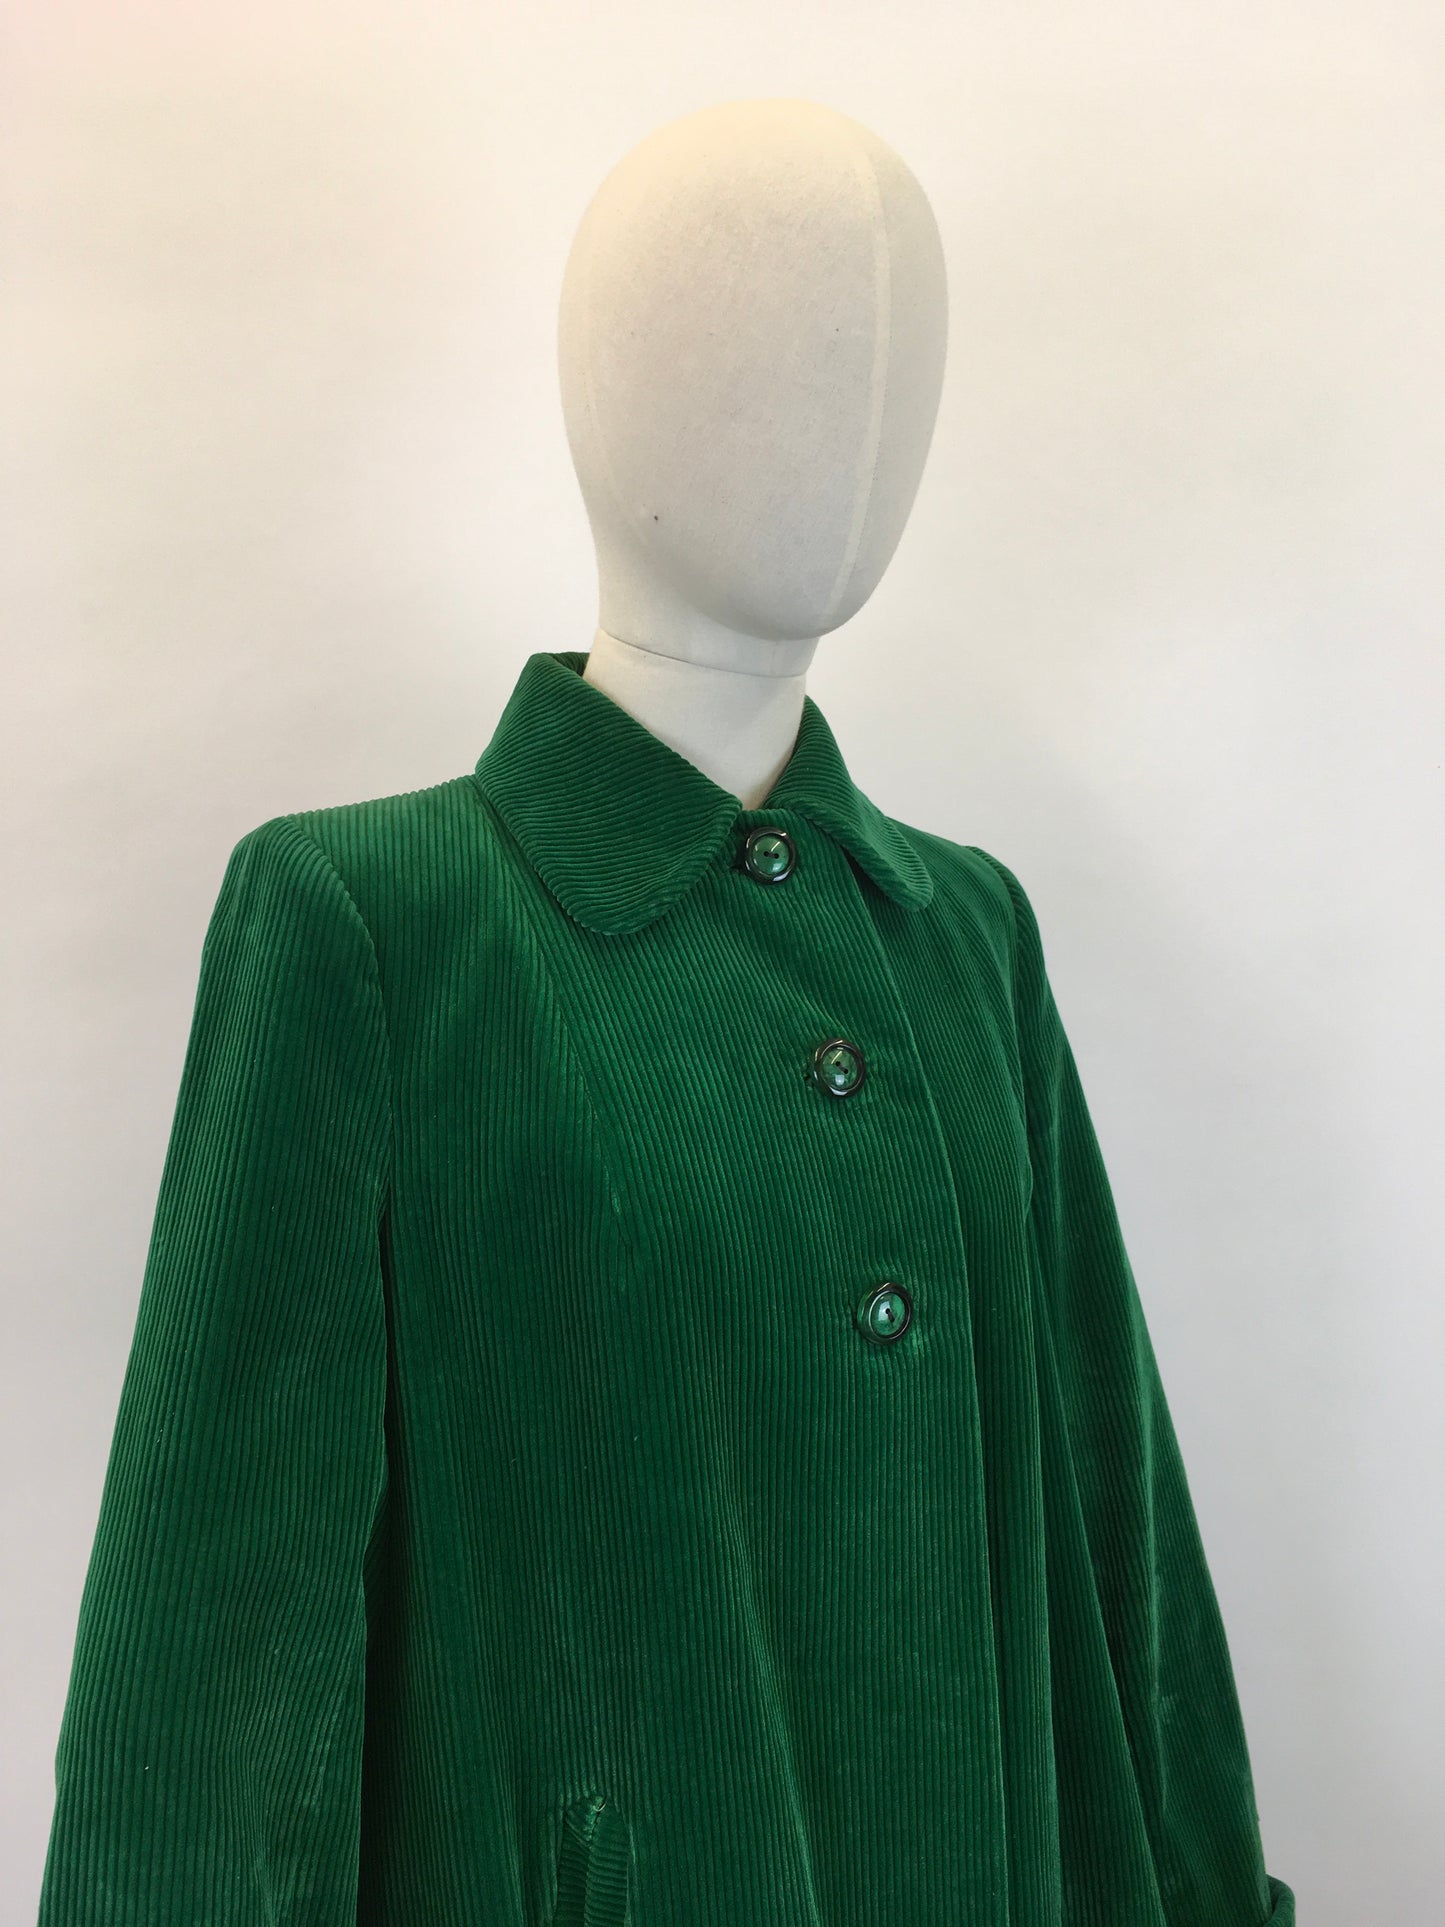 Original 1940's Needlepoint Corduroy Swing Coat - In An Exquisite Emerald Green